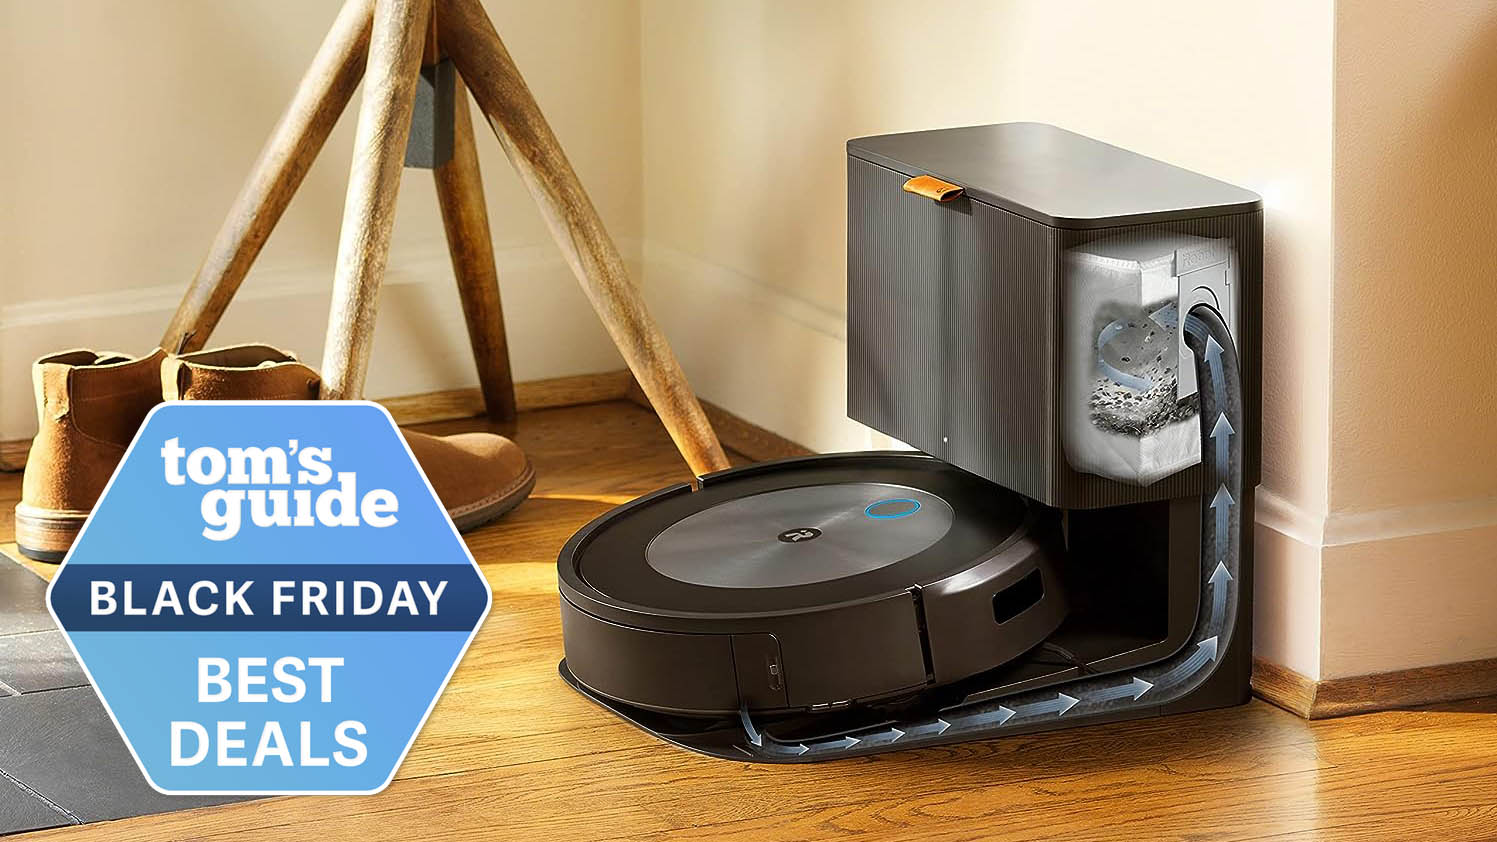 Black Friday Roomba deals — 3 huge discounts I'd buy now